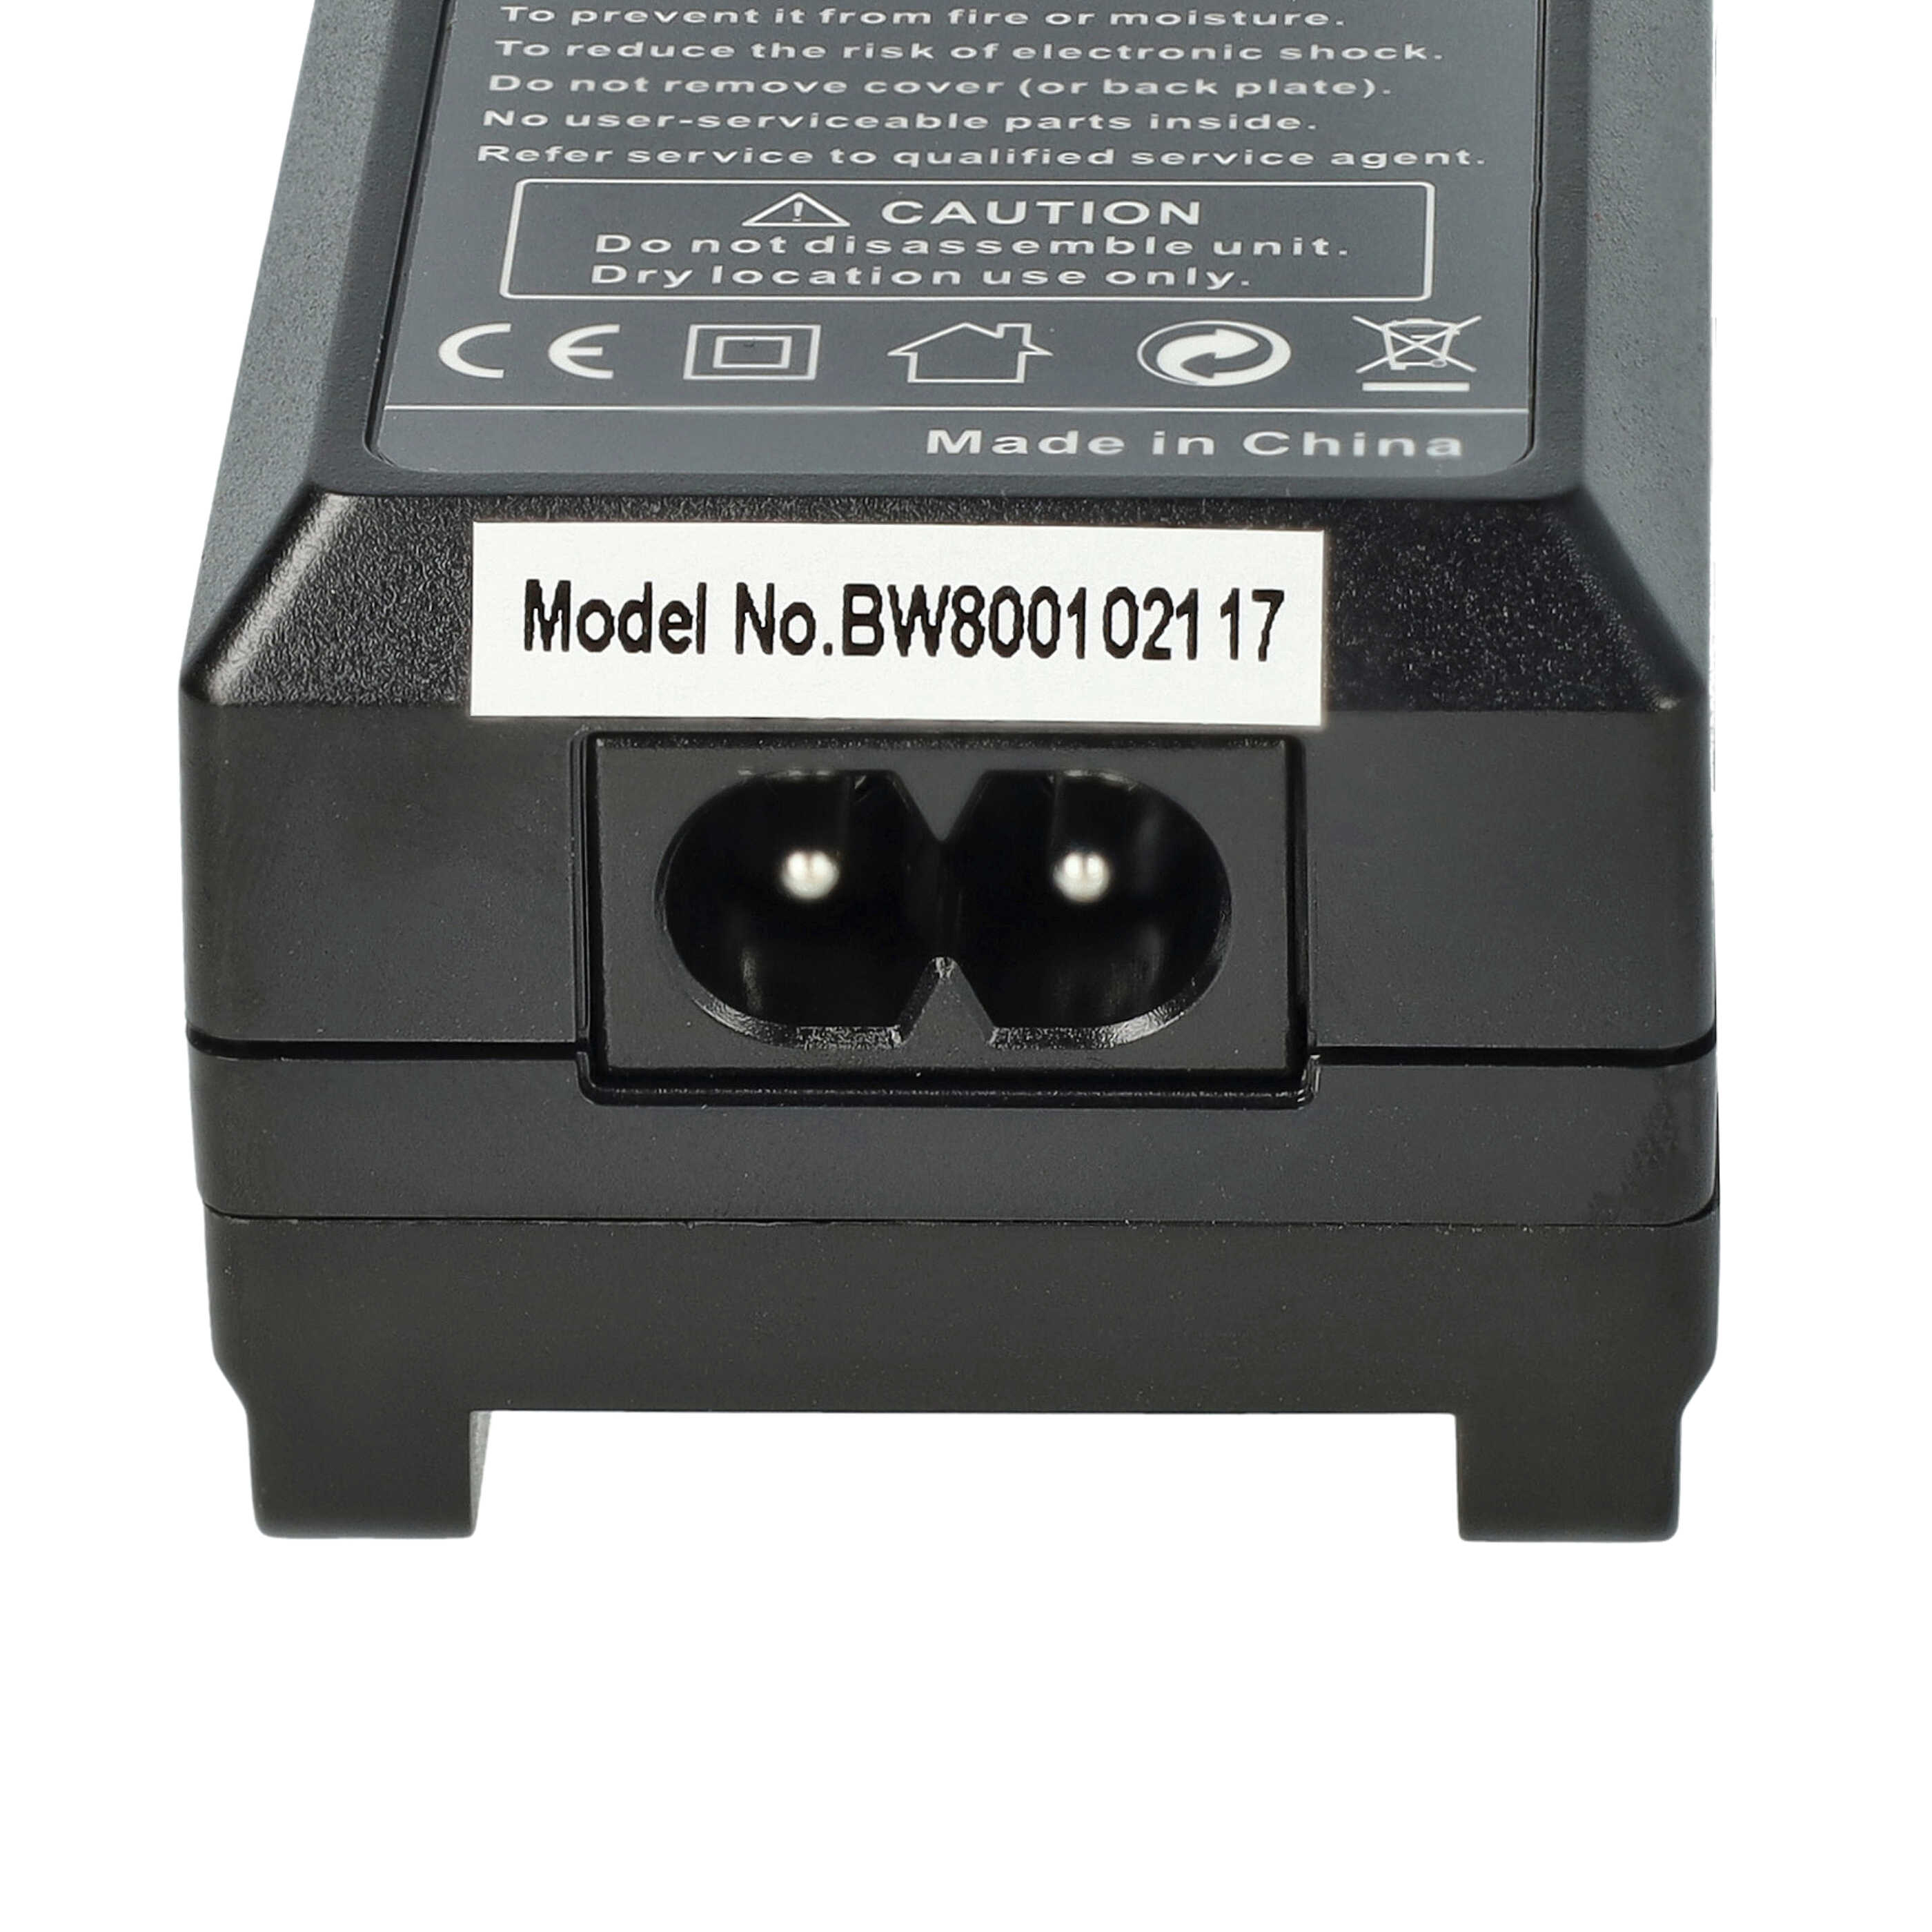 Chargeur pour appareil photo HC-V110 